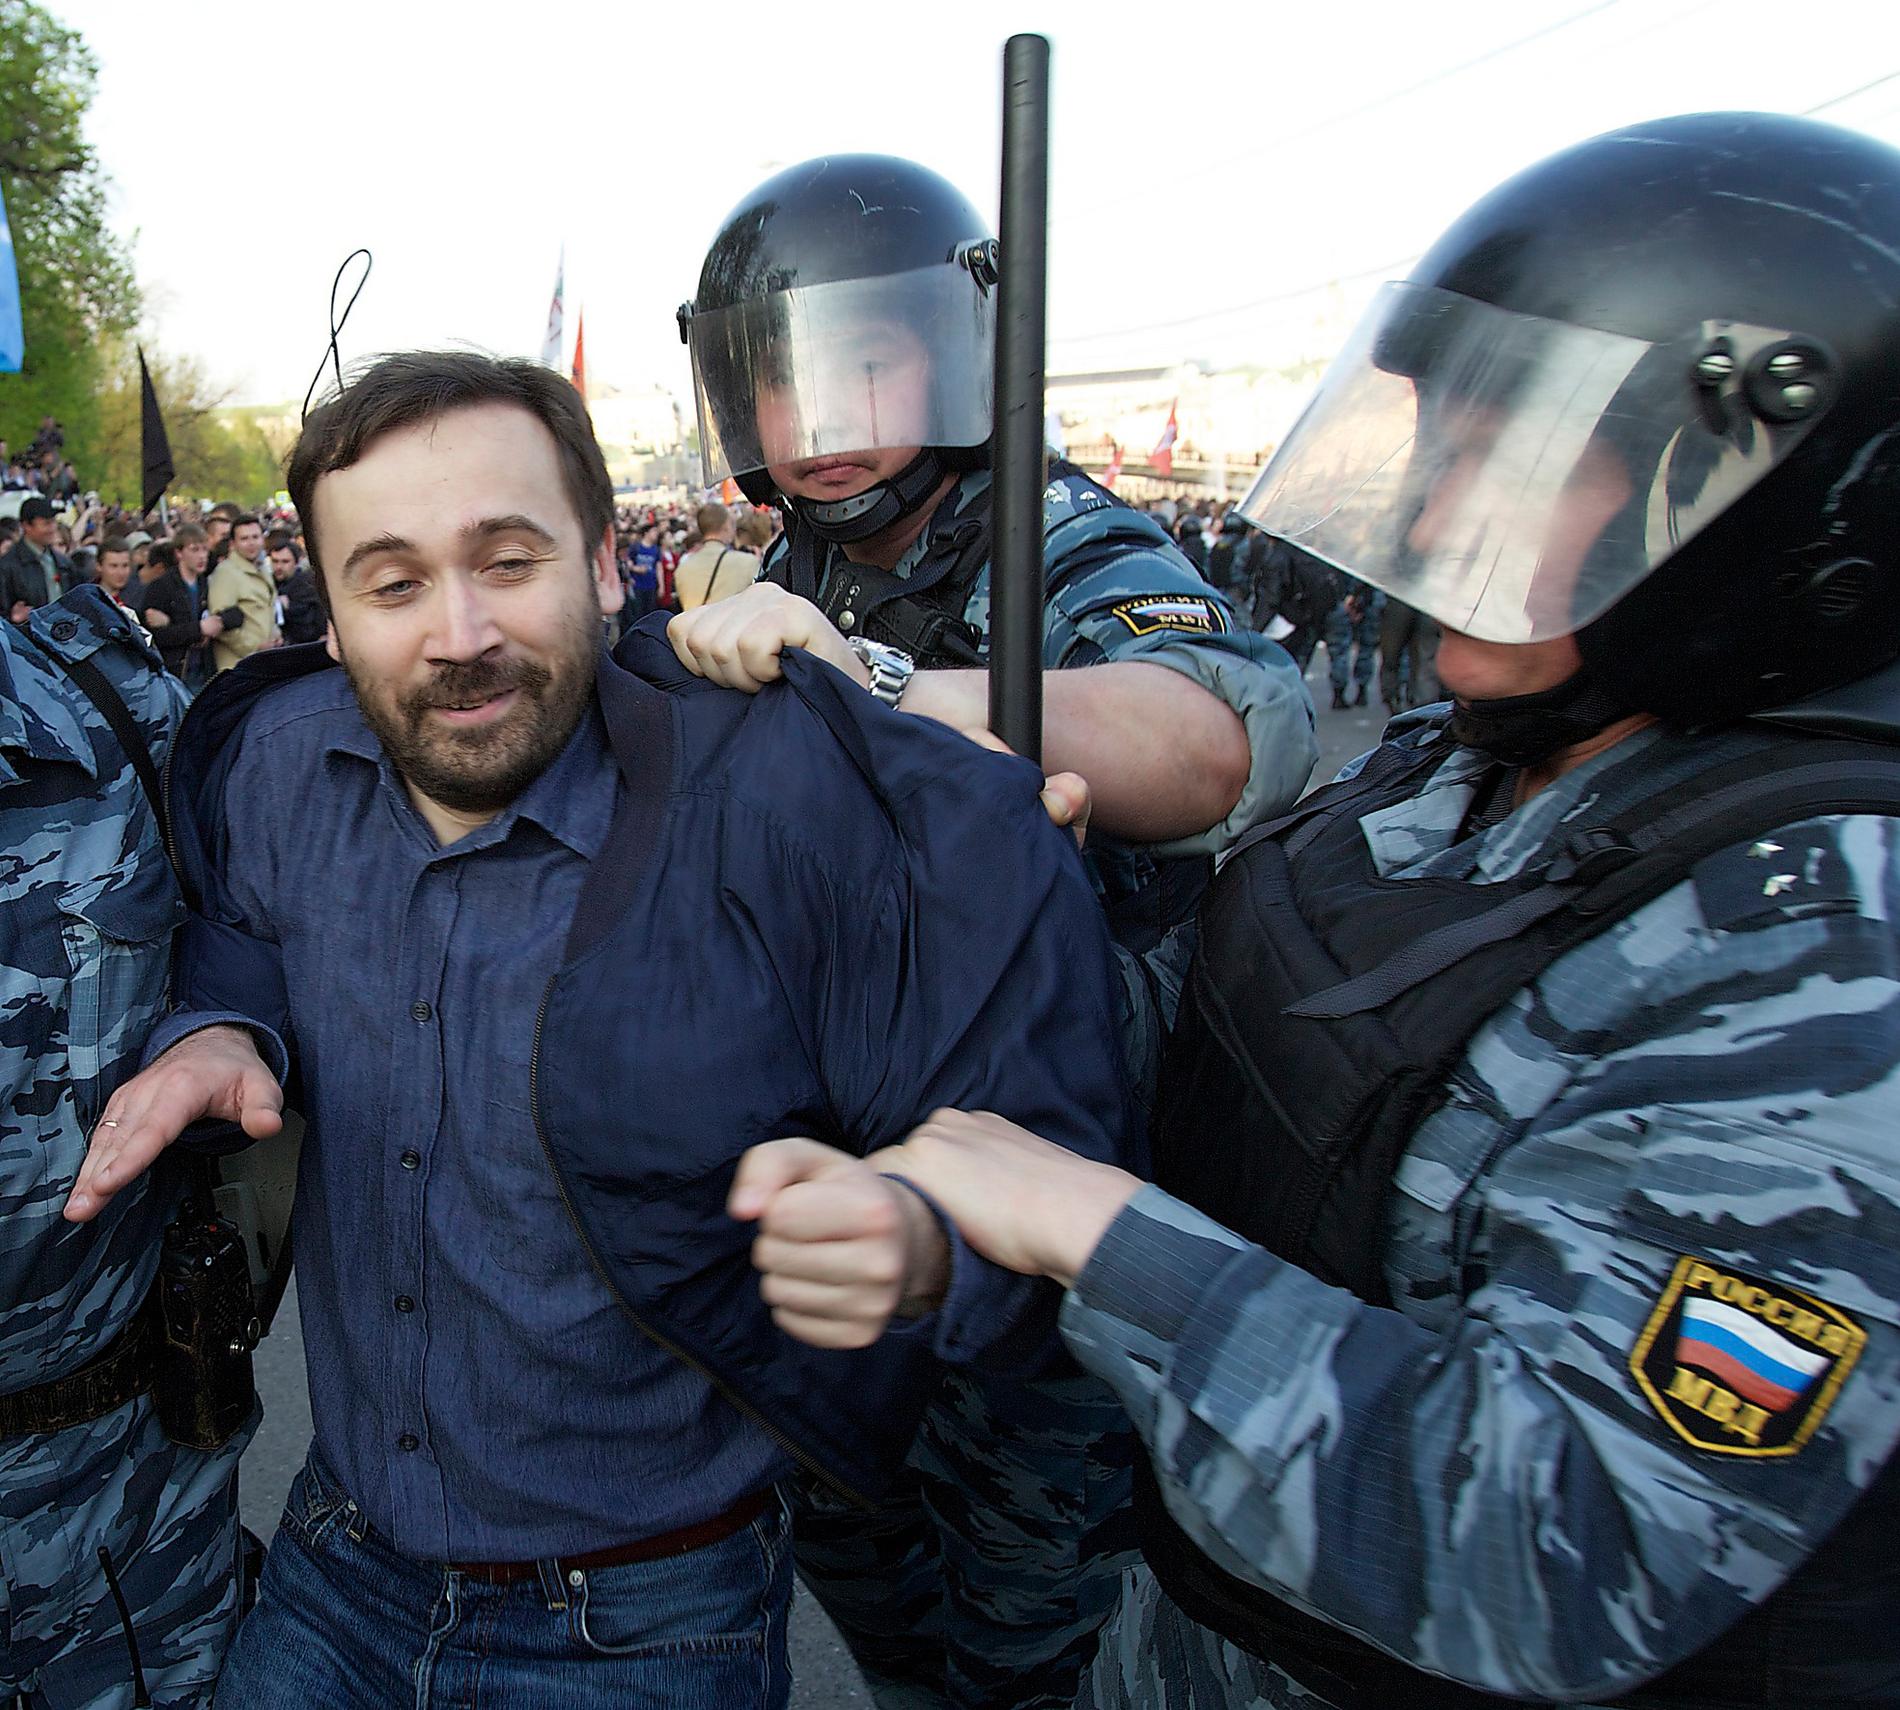 Stämplad som landsförrädare Oppositionspolitikern Ilja Ponomarjov förs bort av kravallpolis i samband med protester mot Putin vid Bolotnajatorget 2012. I dag lever Ponomarjov som politisk flykting i USA. Foto: AP